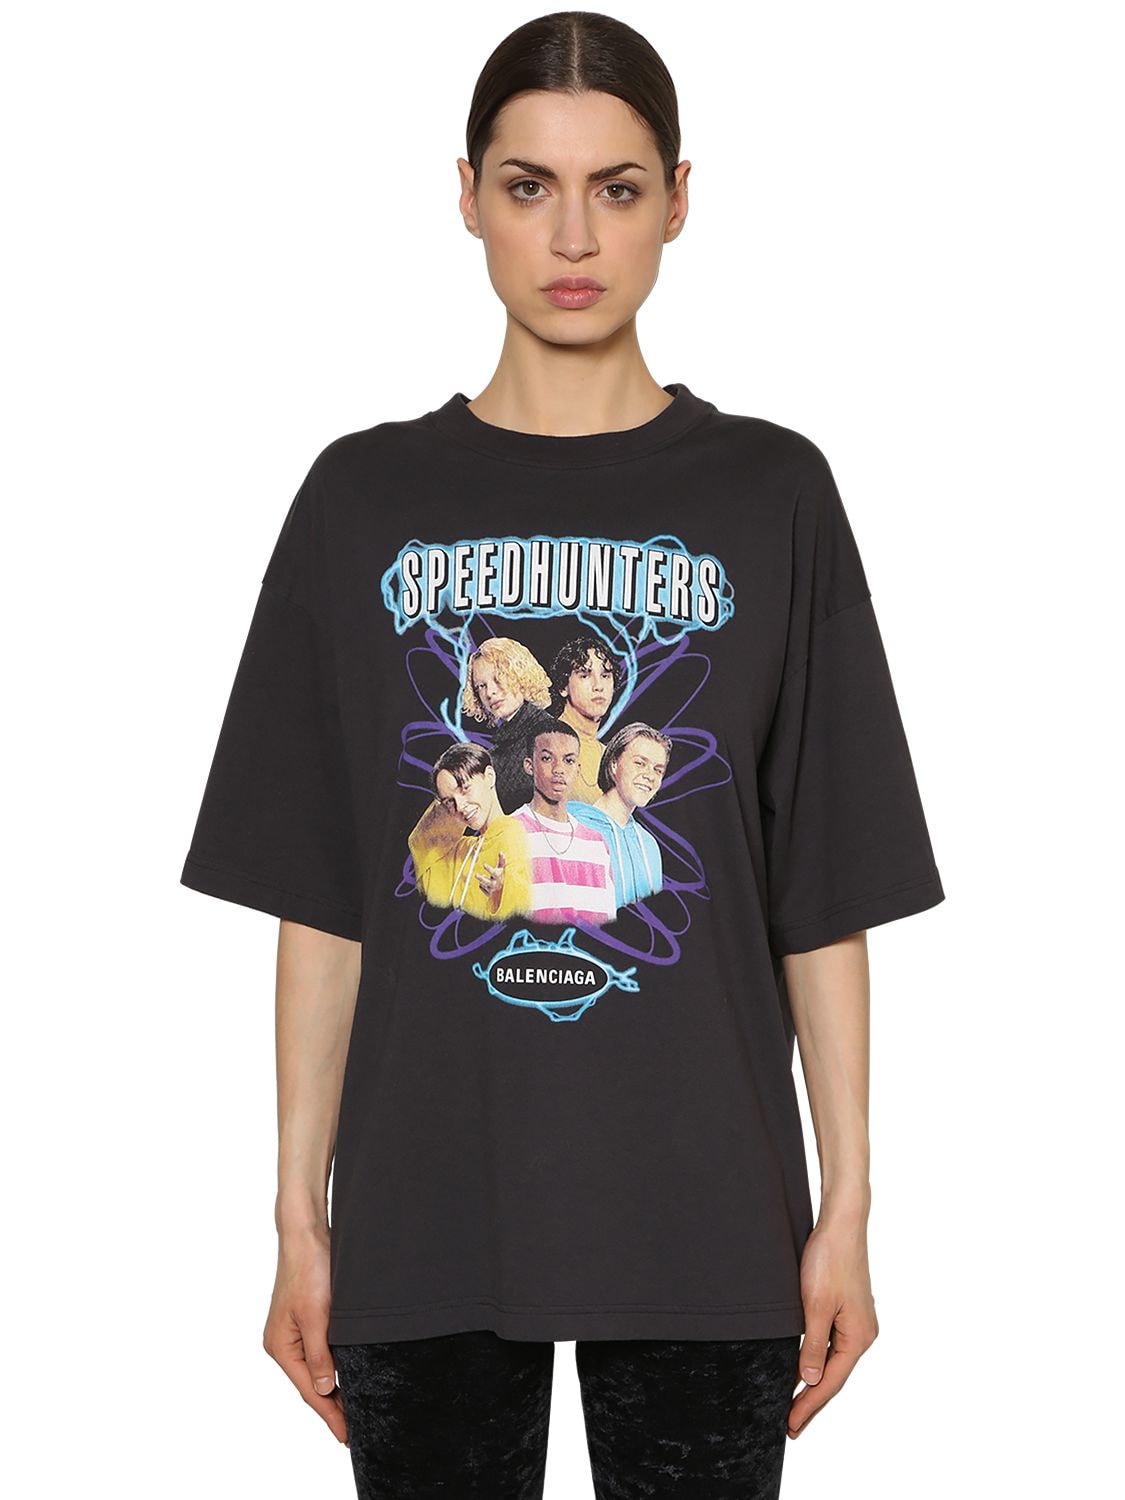 一番人気物 BALENCIAGA スピードハンターズ Tシャツ speedHUNTERes - T 